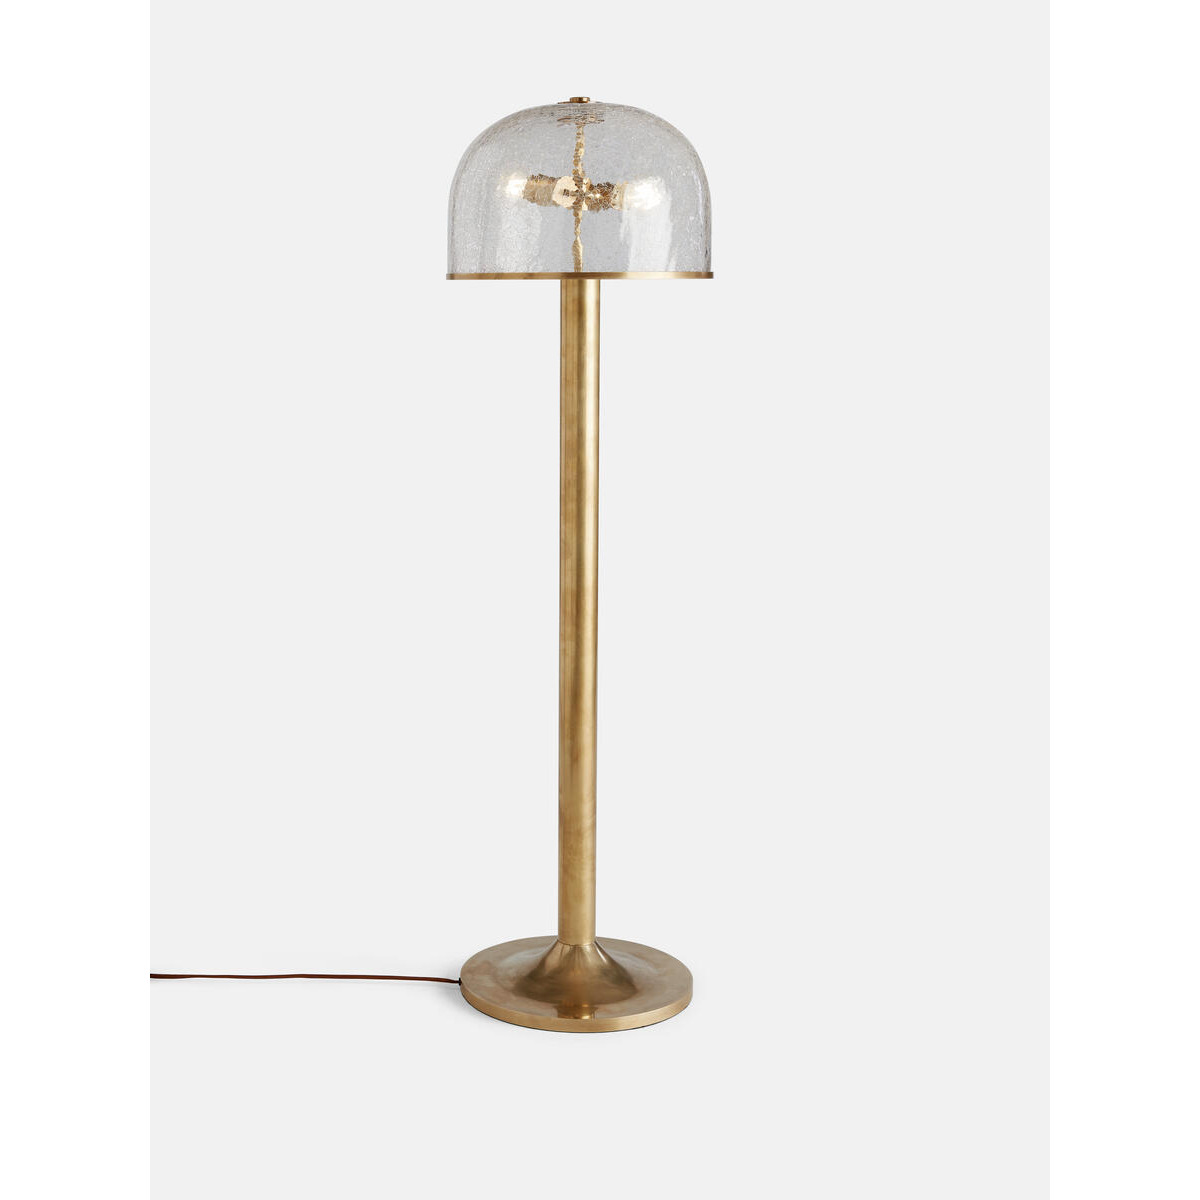 Raphael Floor Lamp - Antique Brass | Buy Online